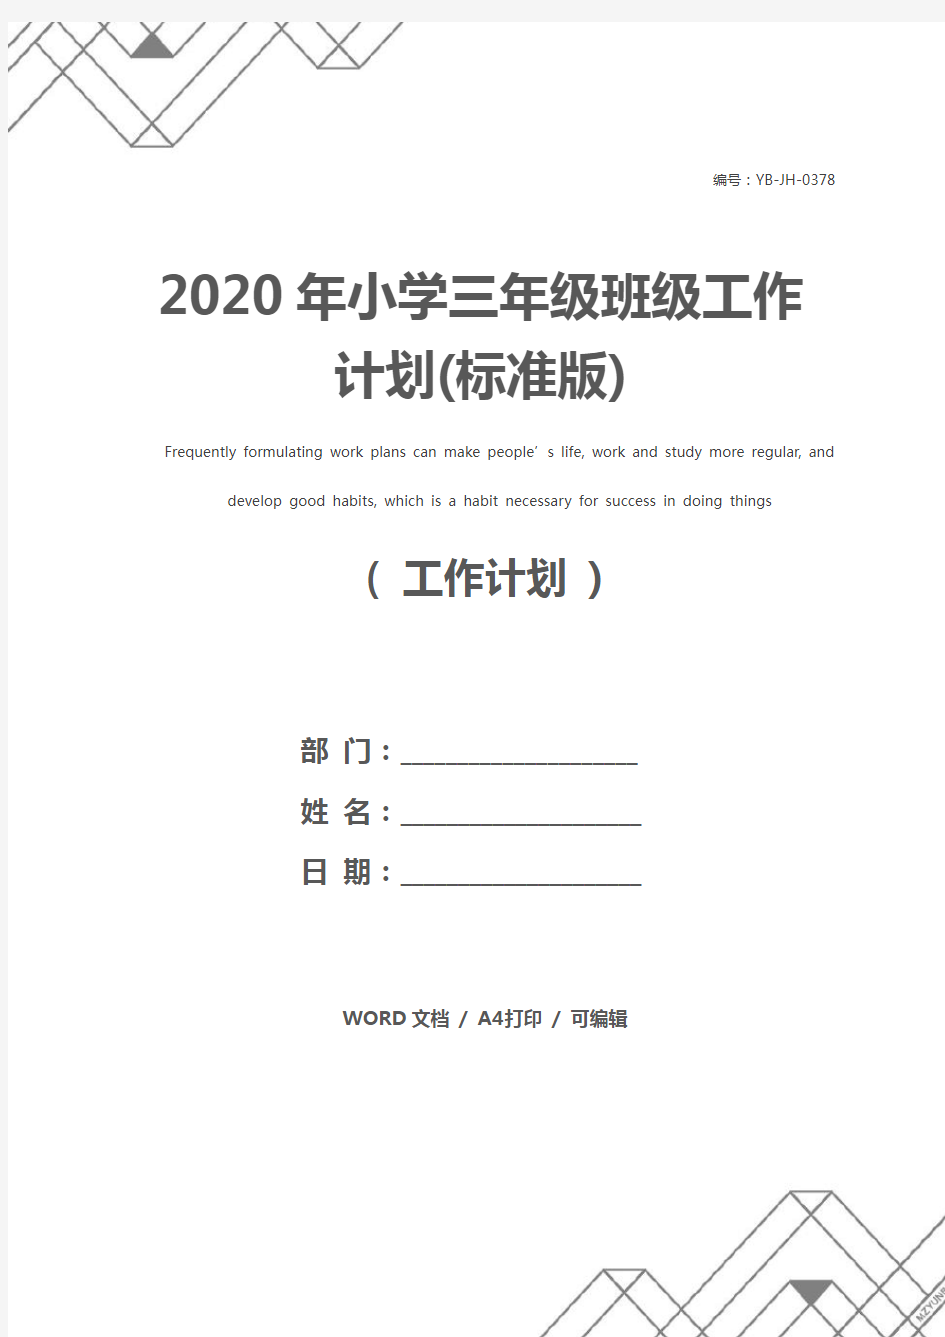 2020年小学三年级班级工作计划(标准版)